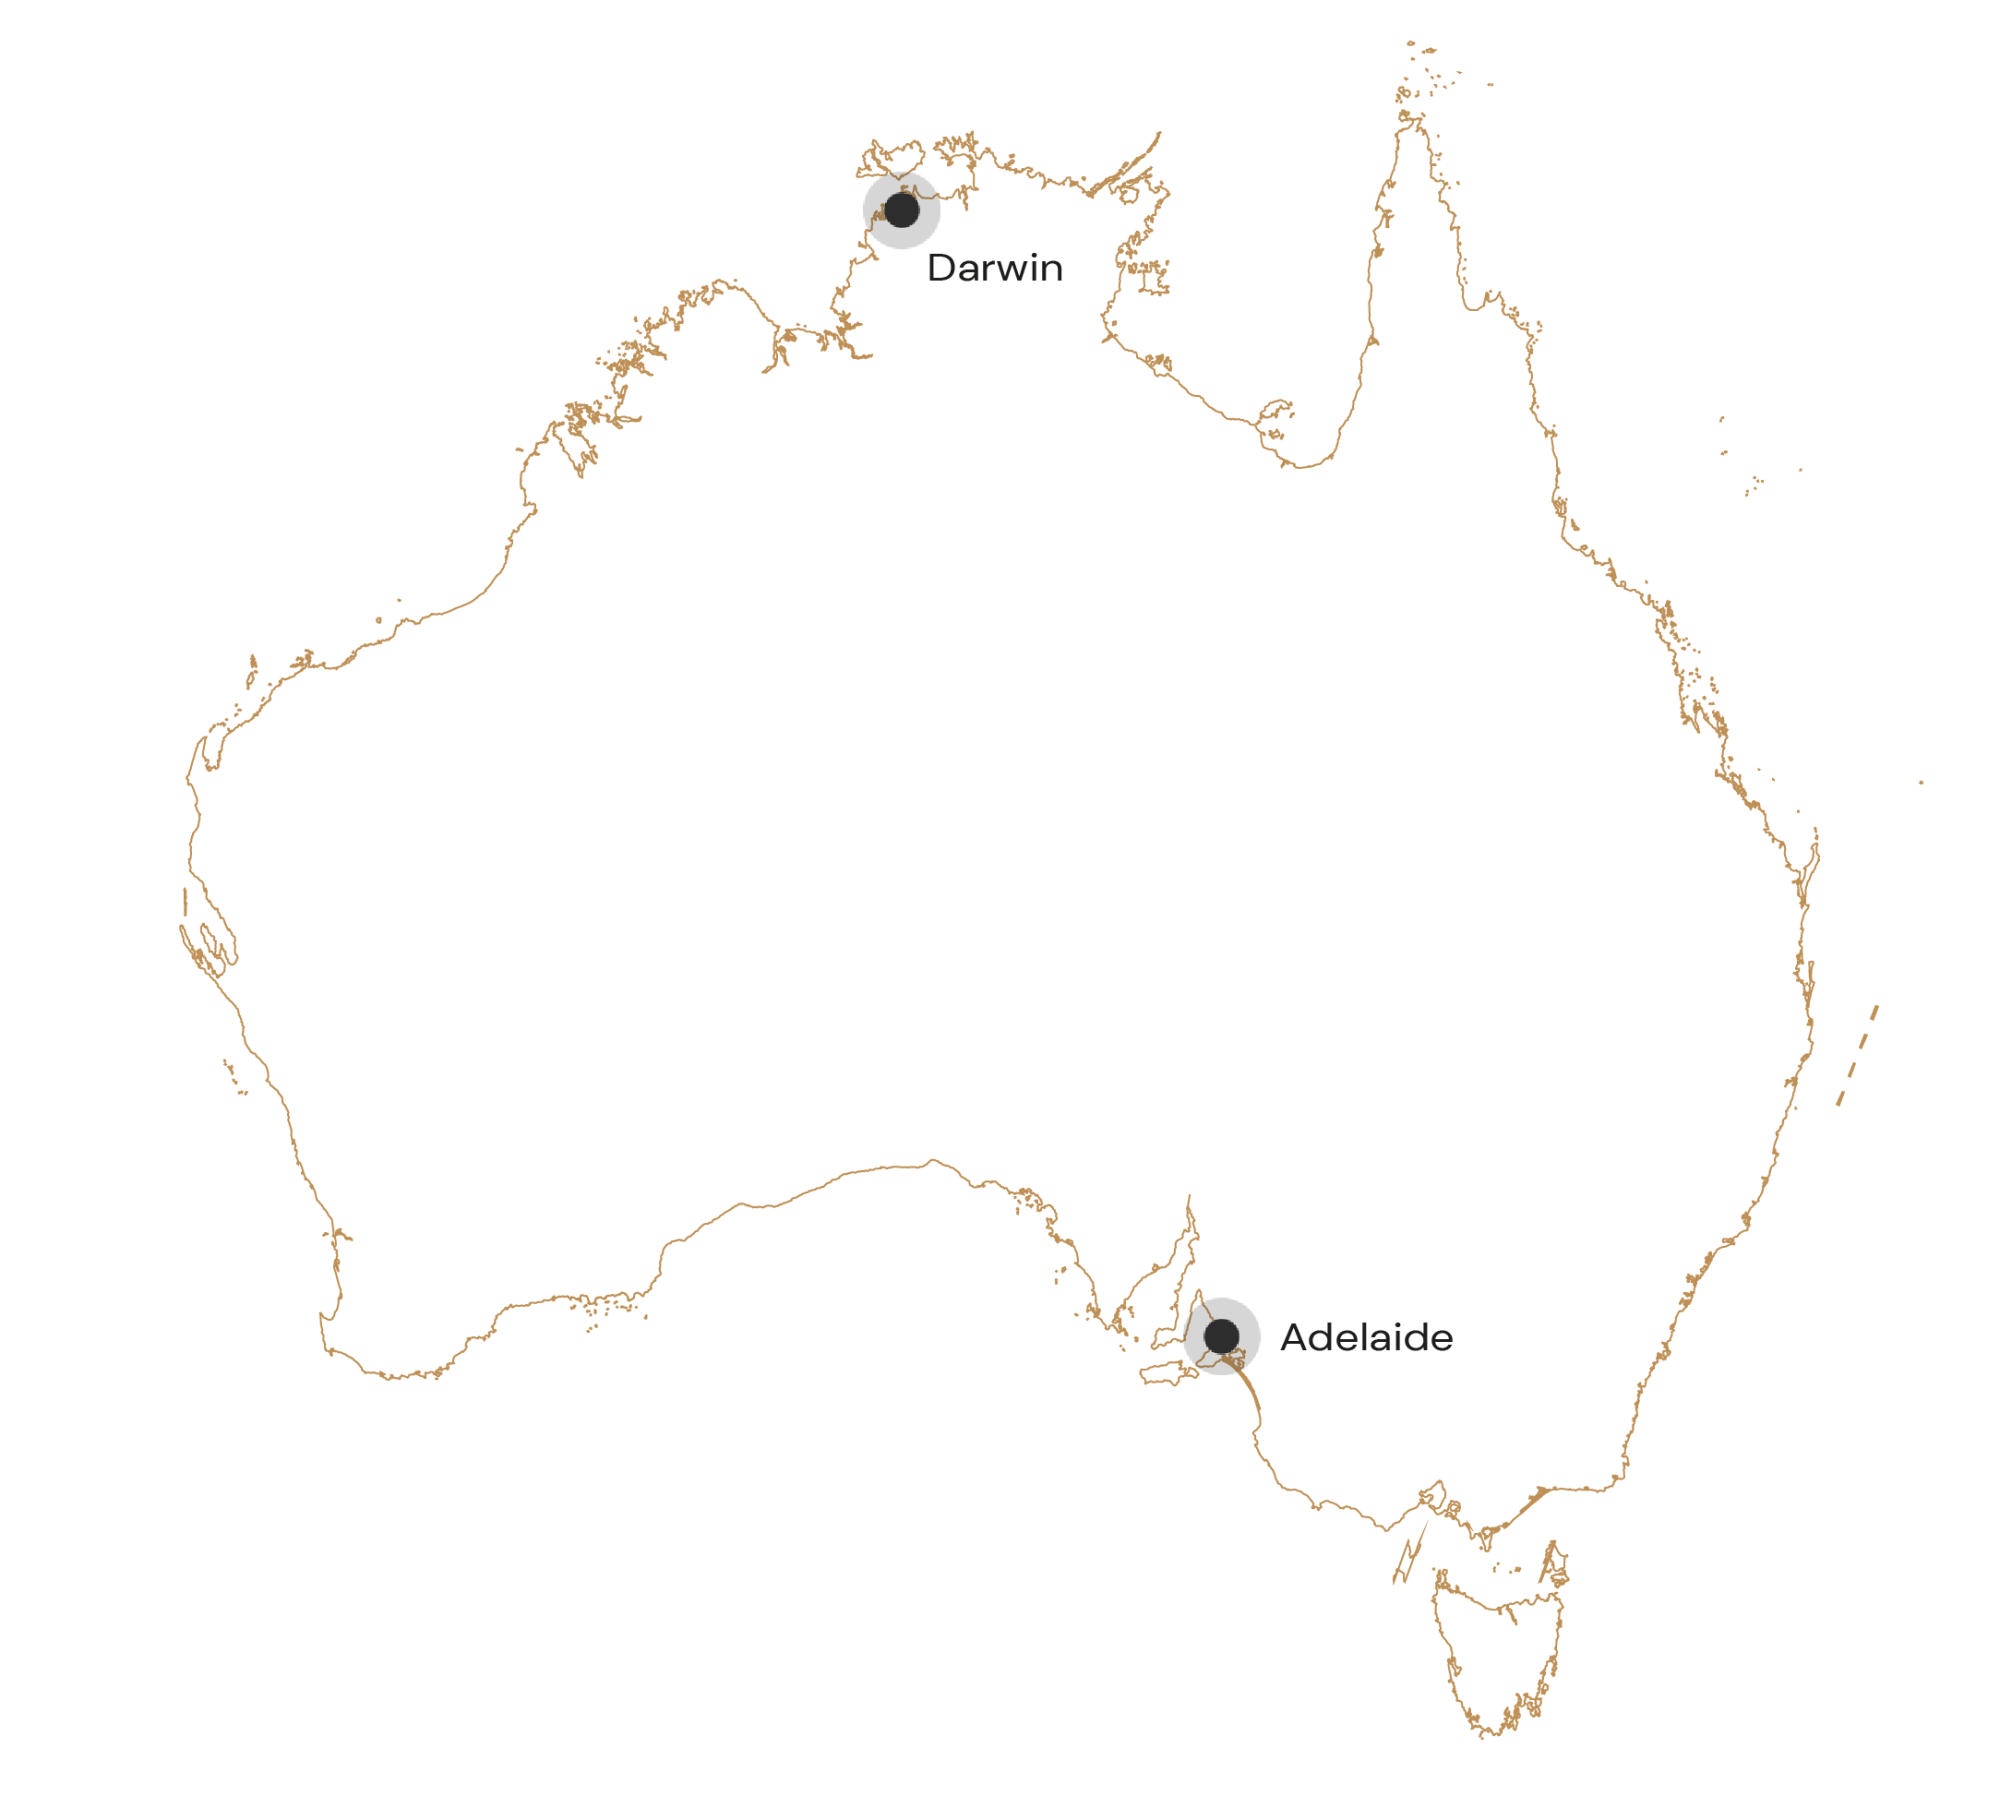 Route Camperreis Australië Adelaide Darwin